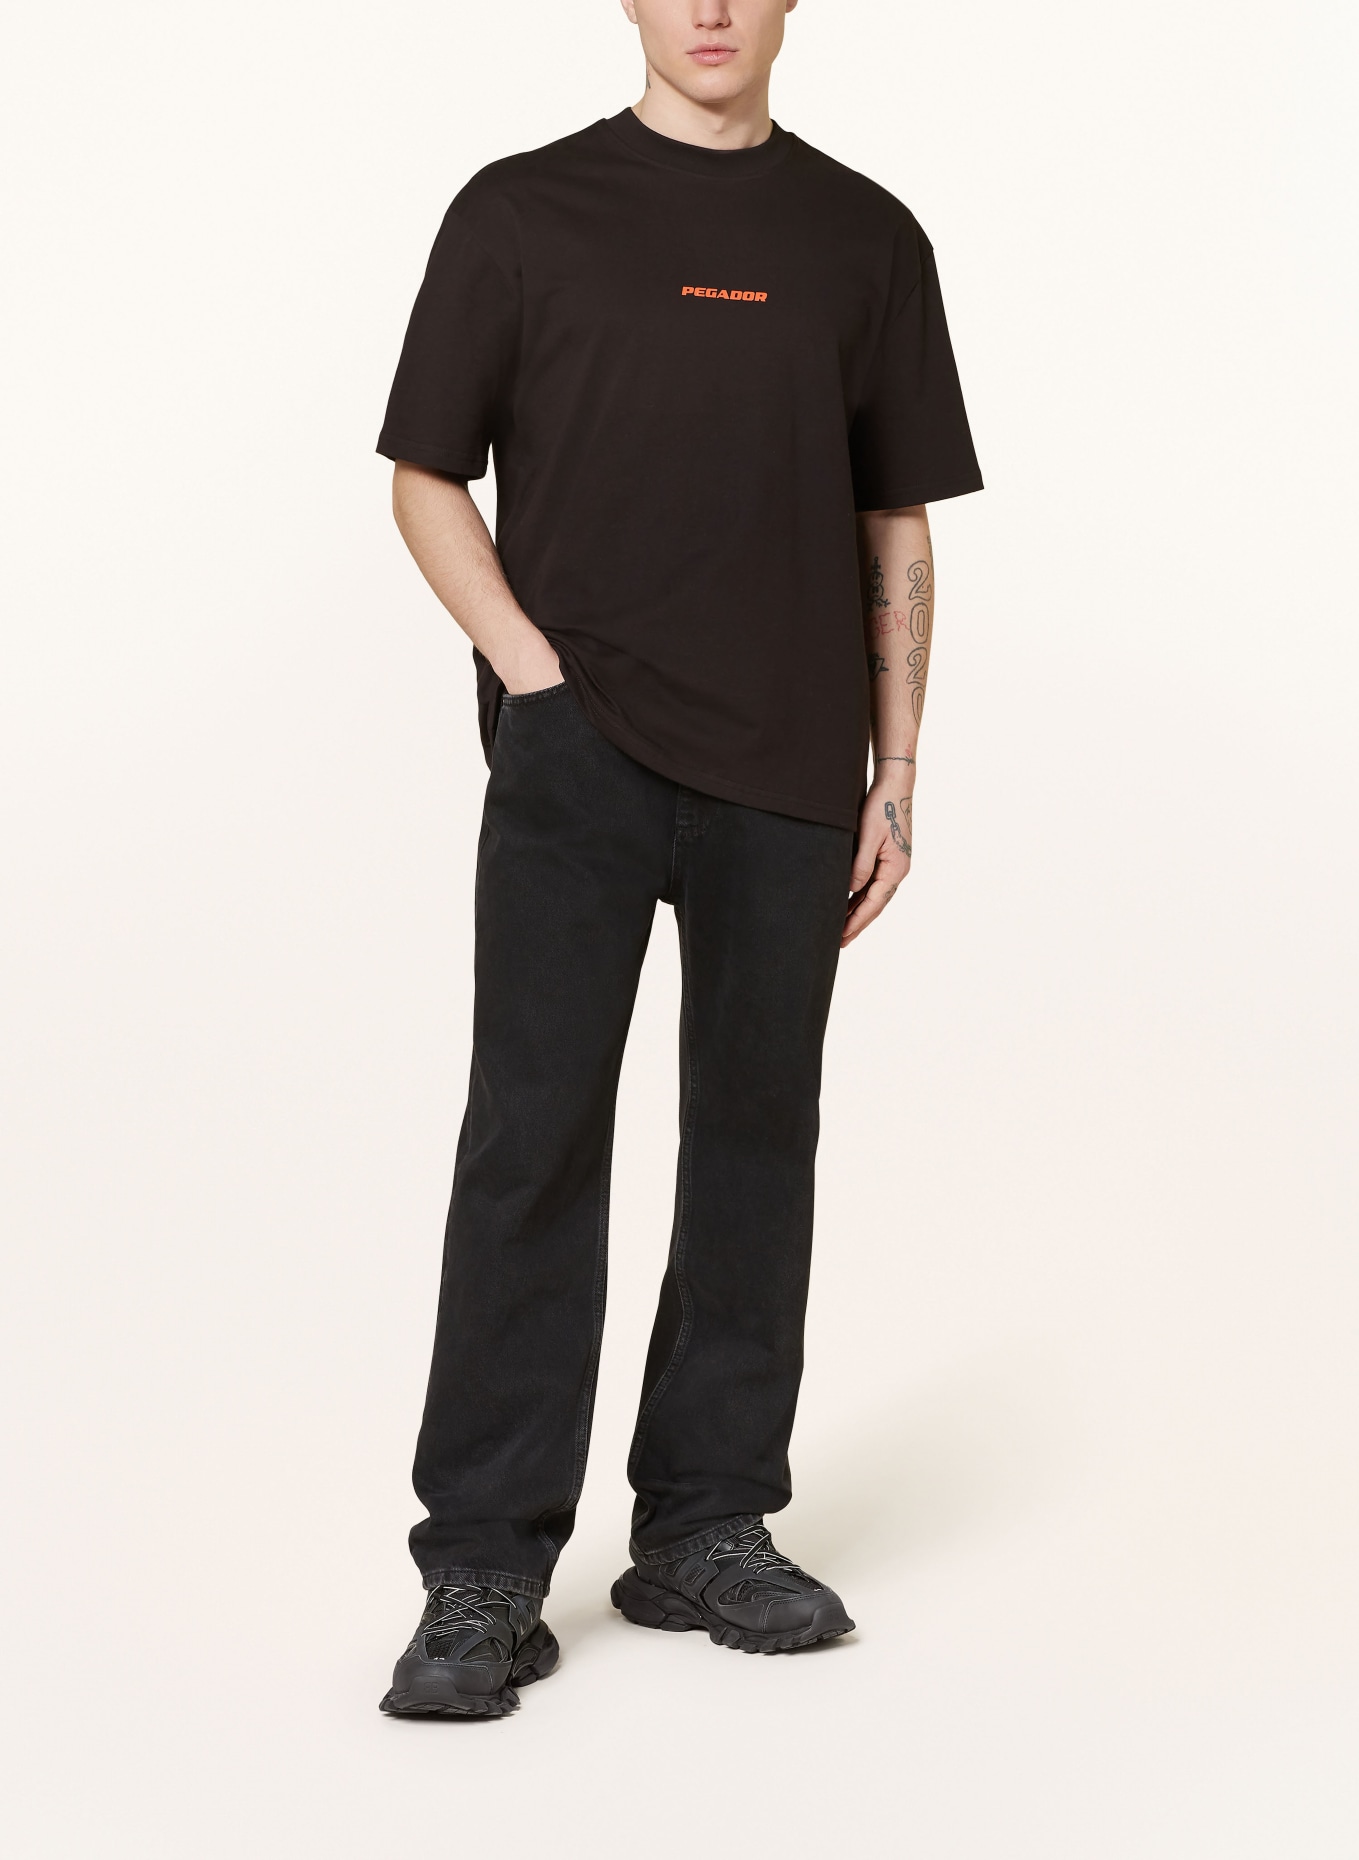 PEGADOR T-shirt COLNE, Color: BLACK (Image 3)